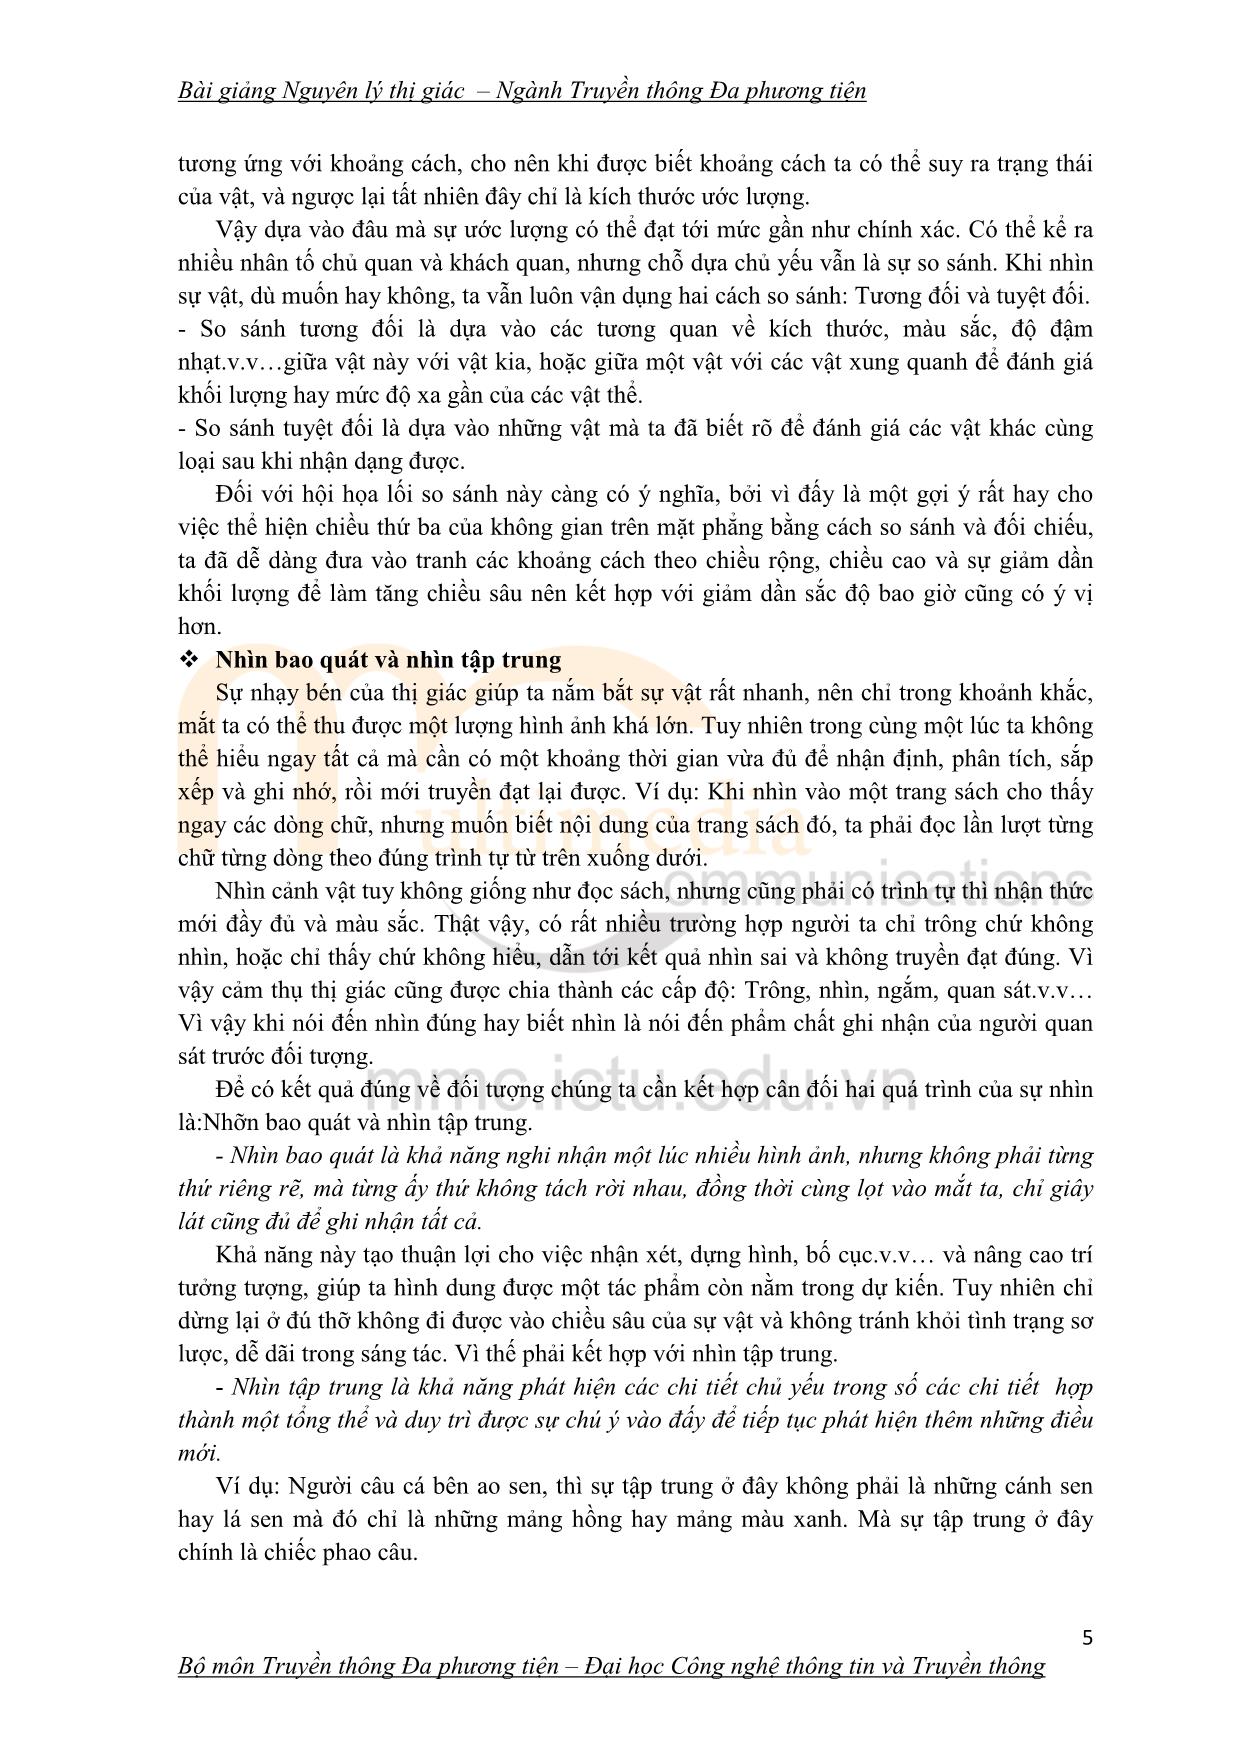 Giáo trình Nguyên lý thị giác (Phần 1) trang 5